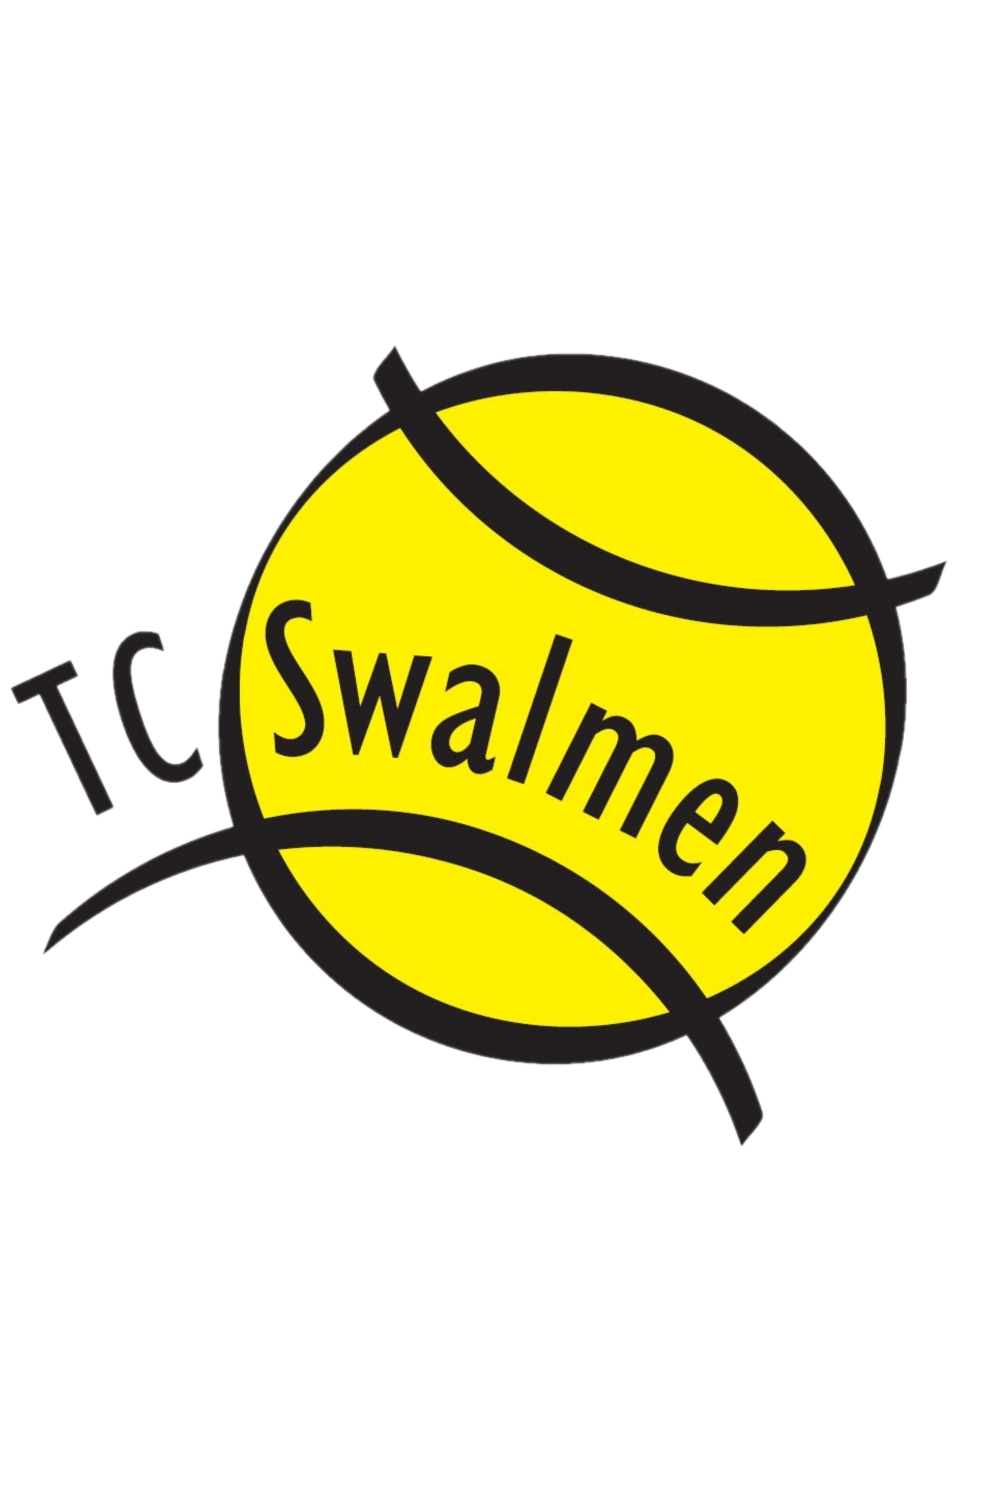 T.C. Swalmen